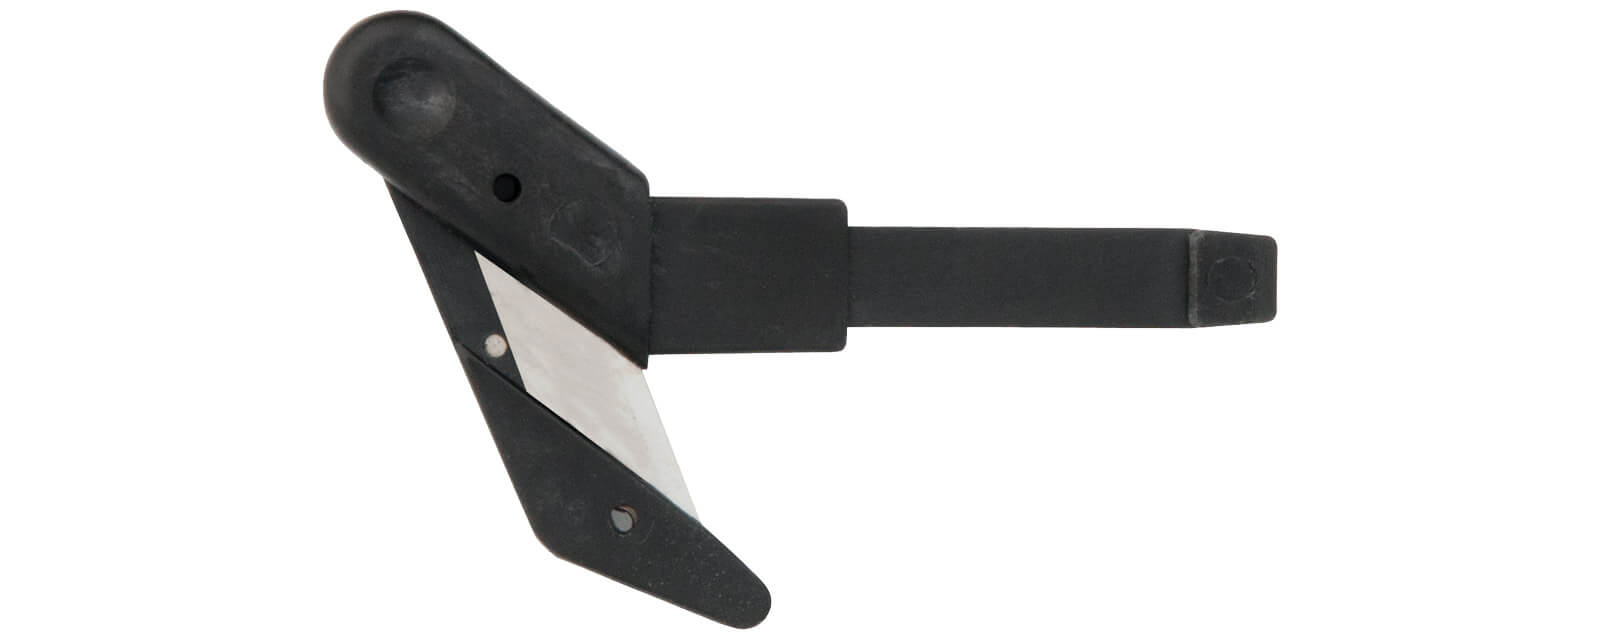 K002-Cuttermesser-Klinge-Breitkopf-für-Klever-XChange-Sicherheitsmesser-CURT-tools_1600